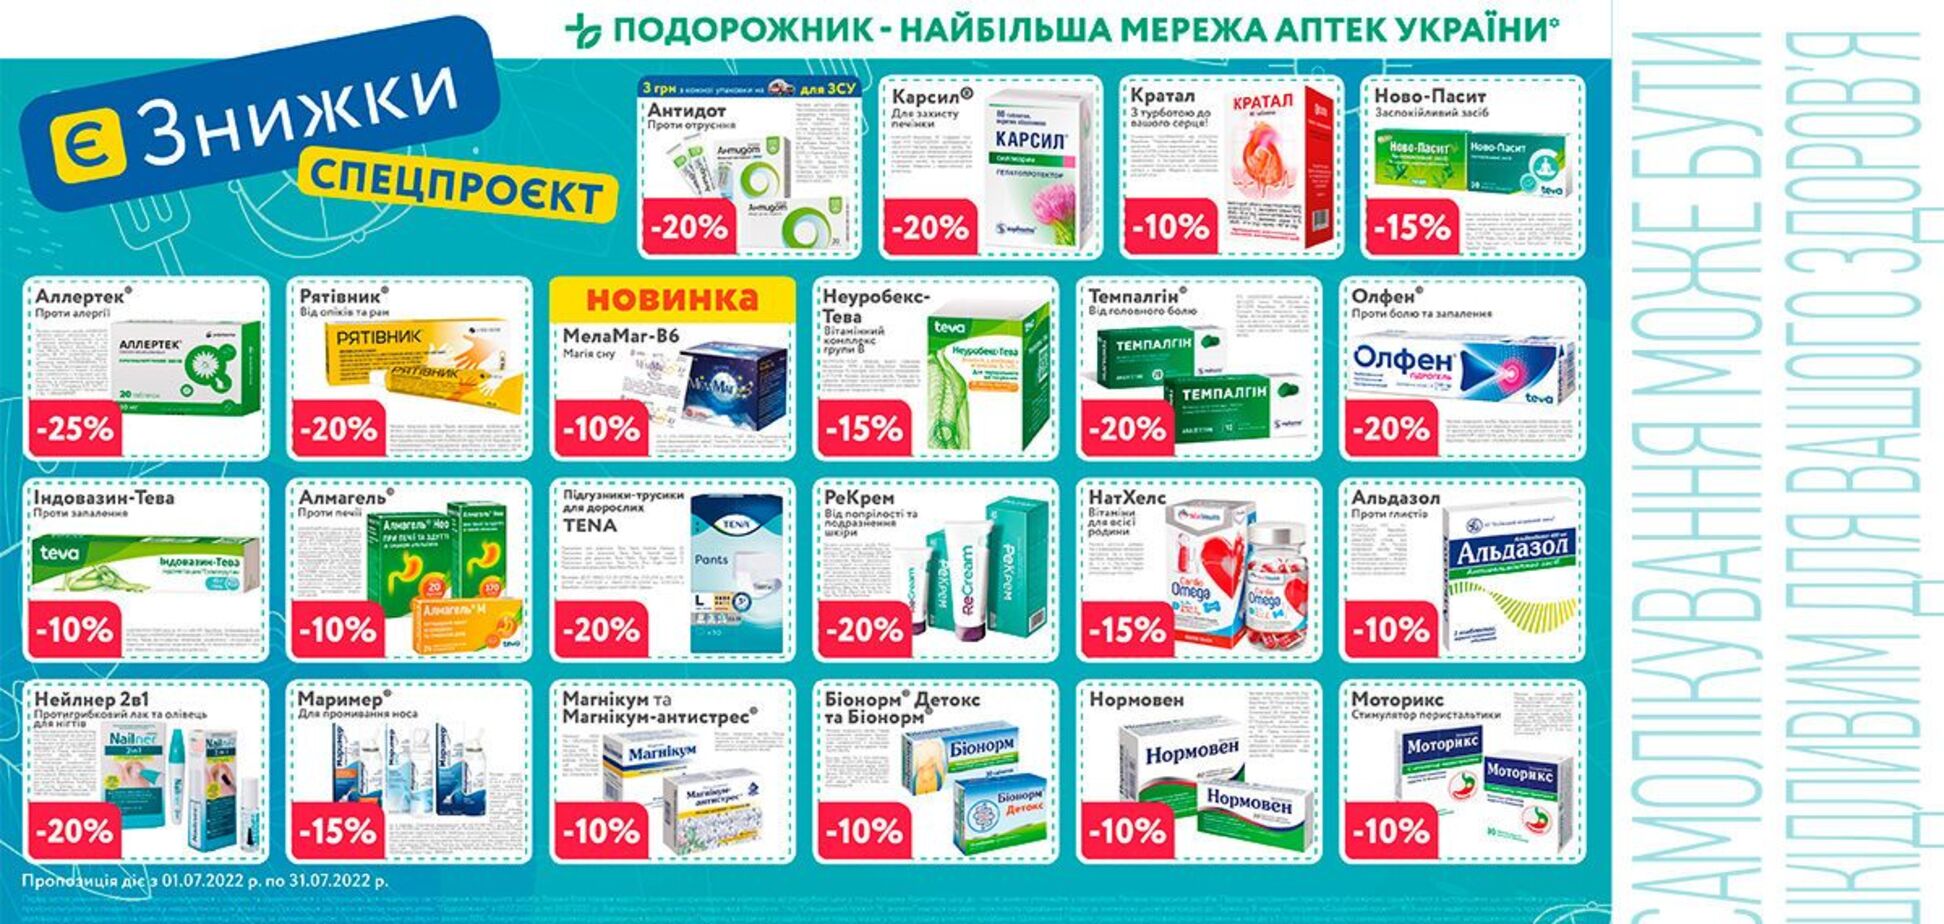 Найбільша мережа аптек України «Подорожник» запустила акцію «Є ЗНИЖКИ»